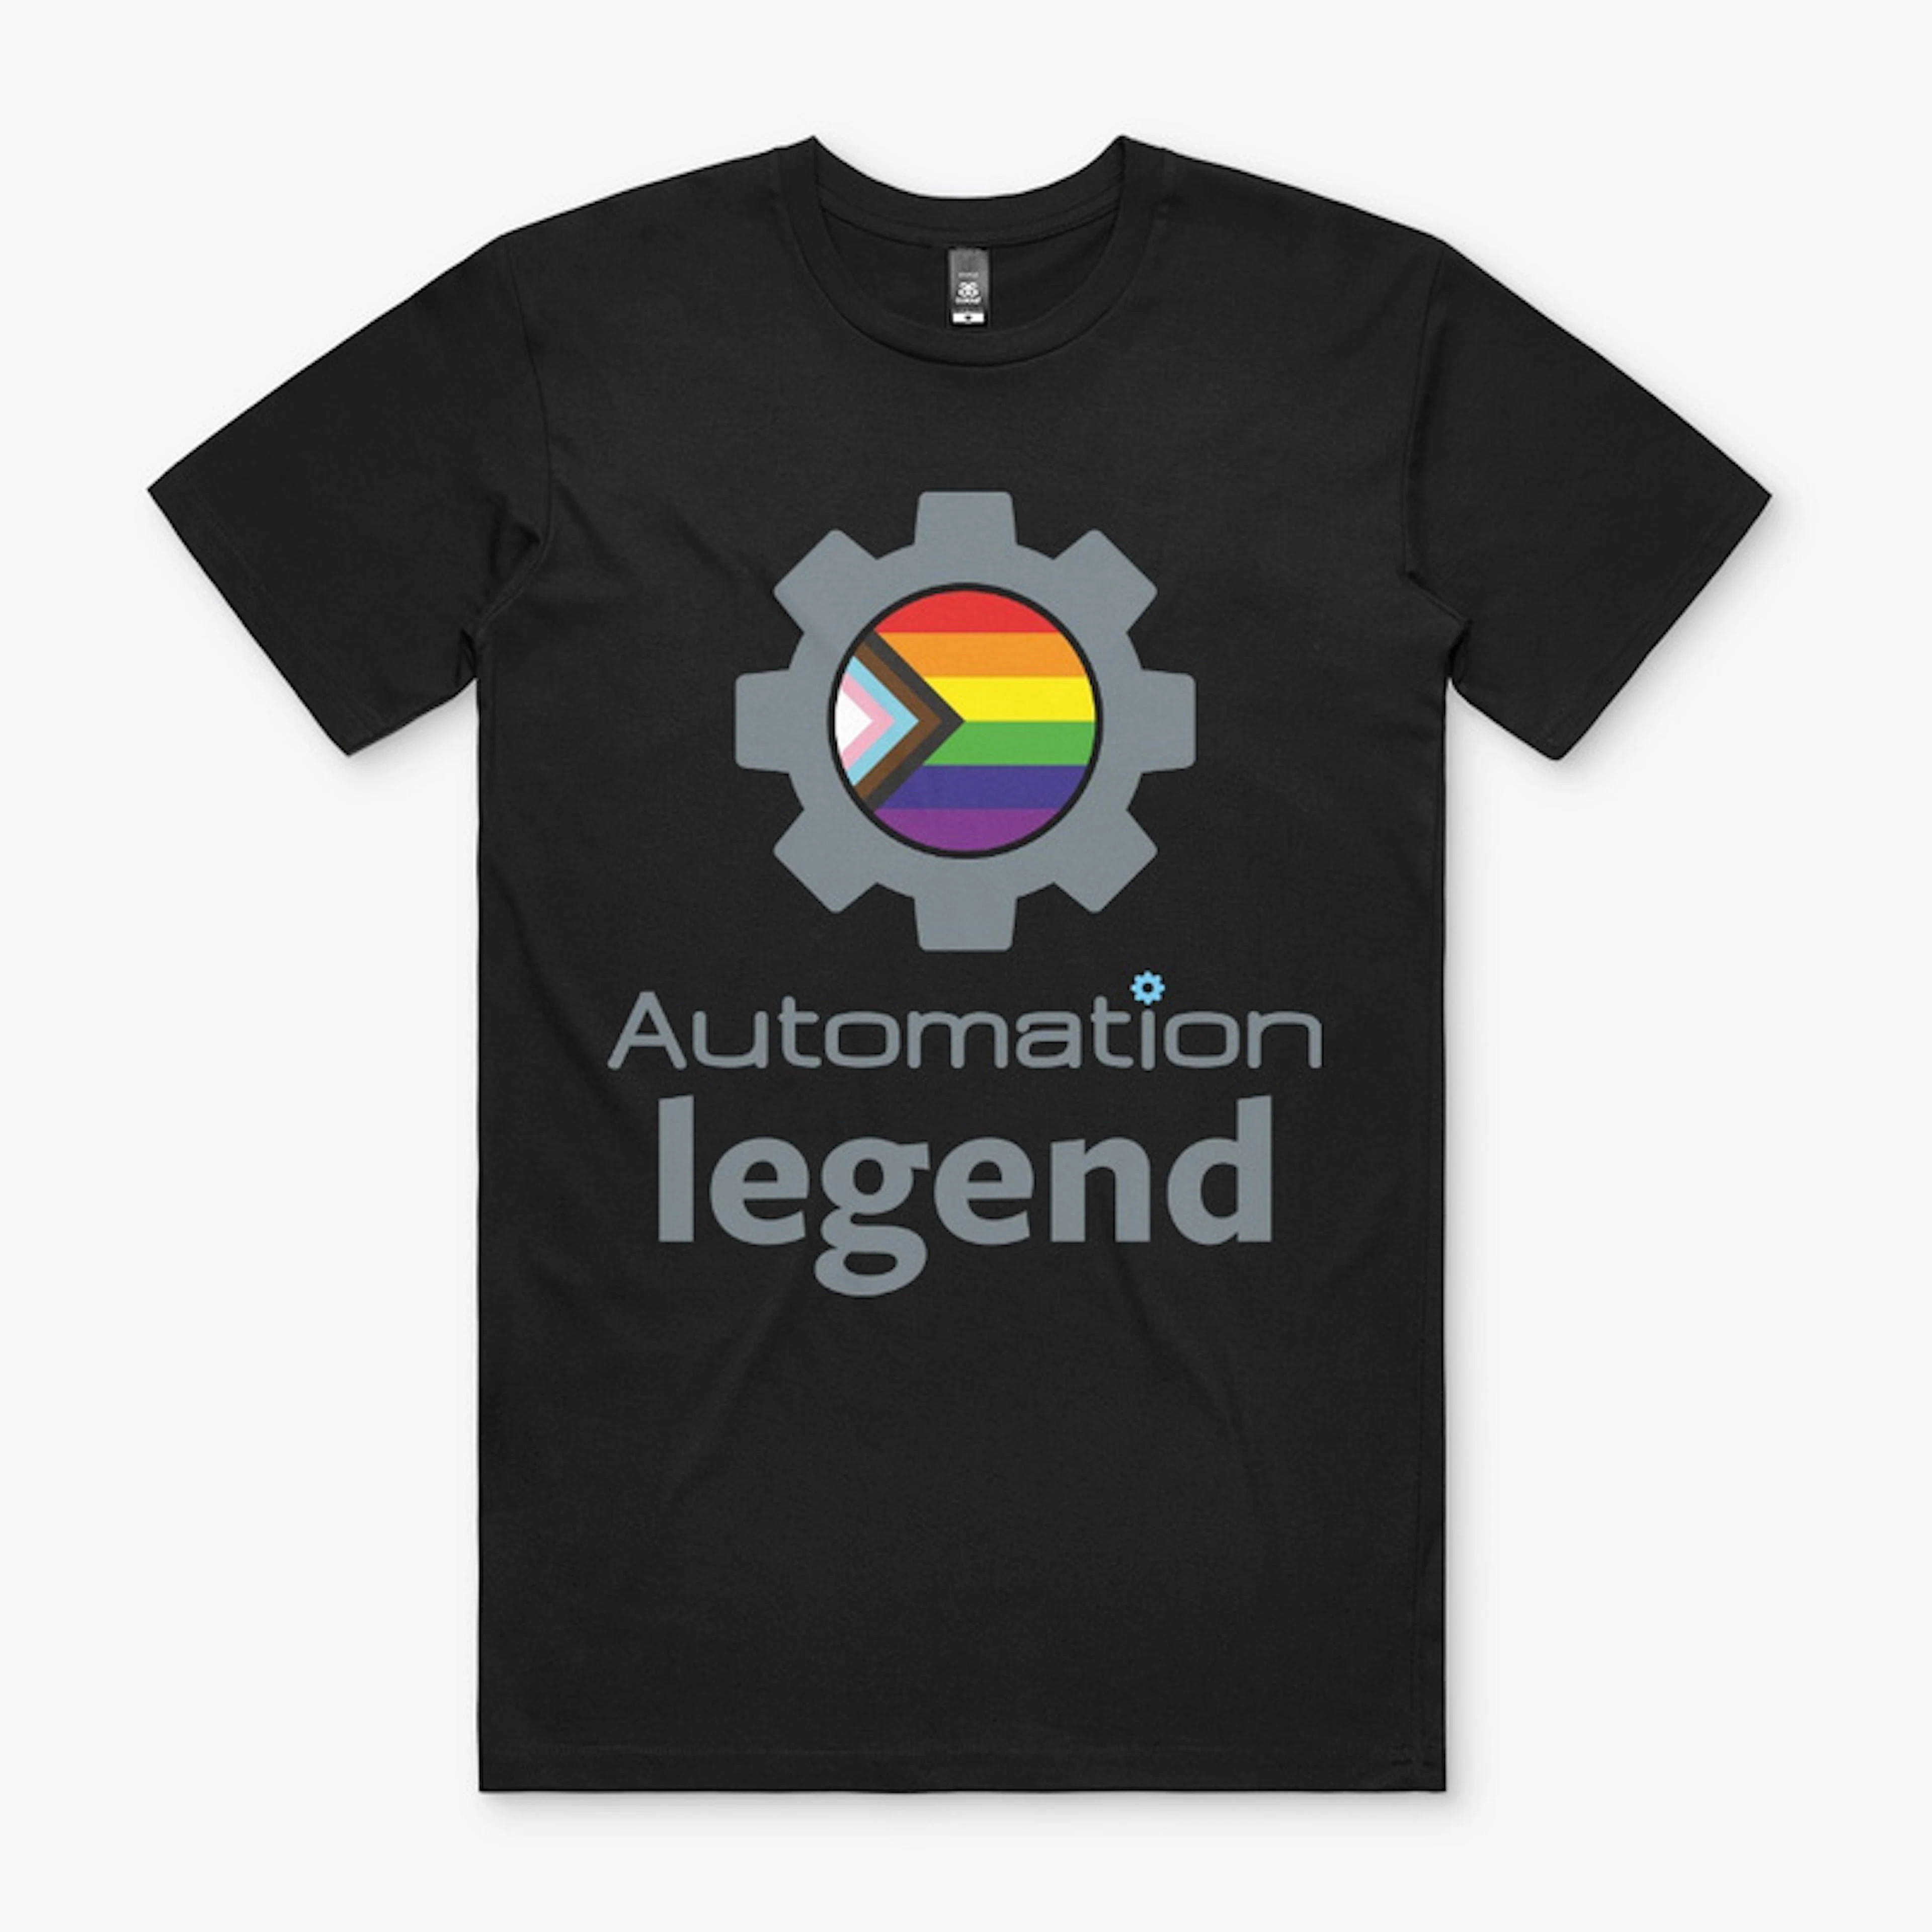 Automation Legend  LGBTQIA+